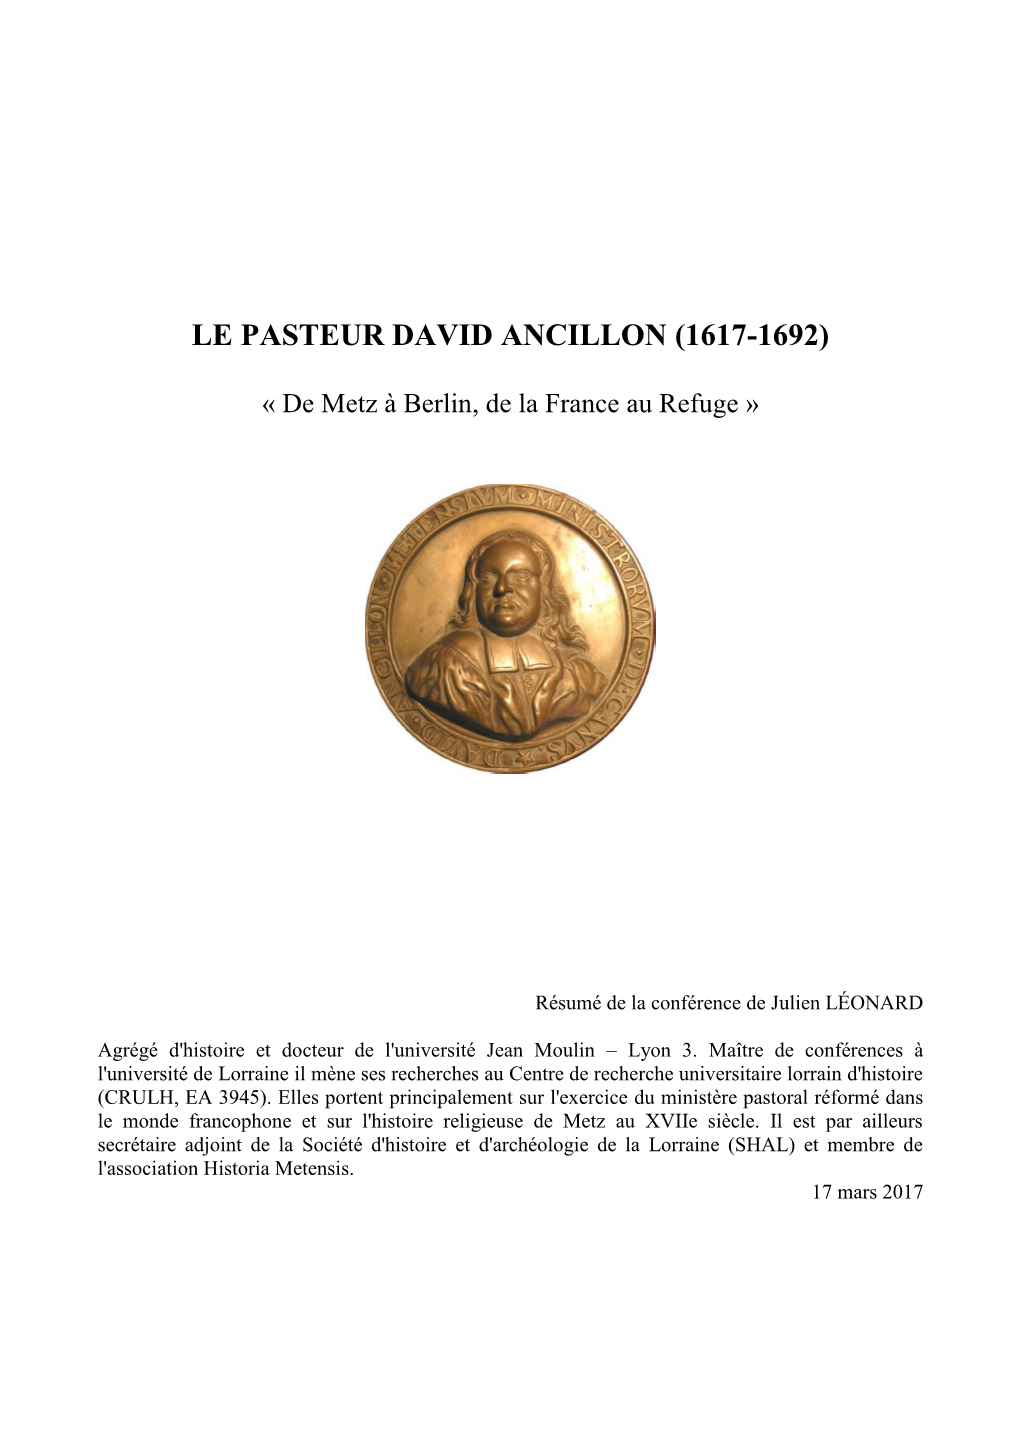 Le Pasteur David Ancillon (1617-1692)